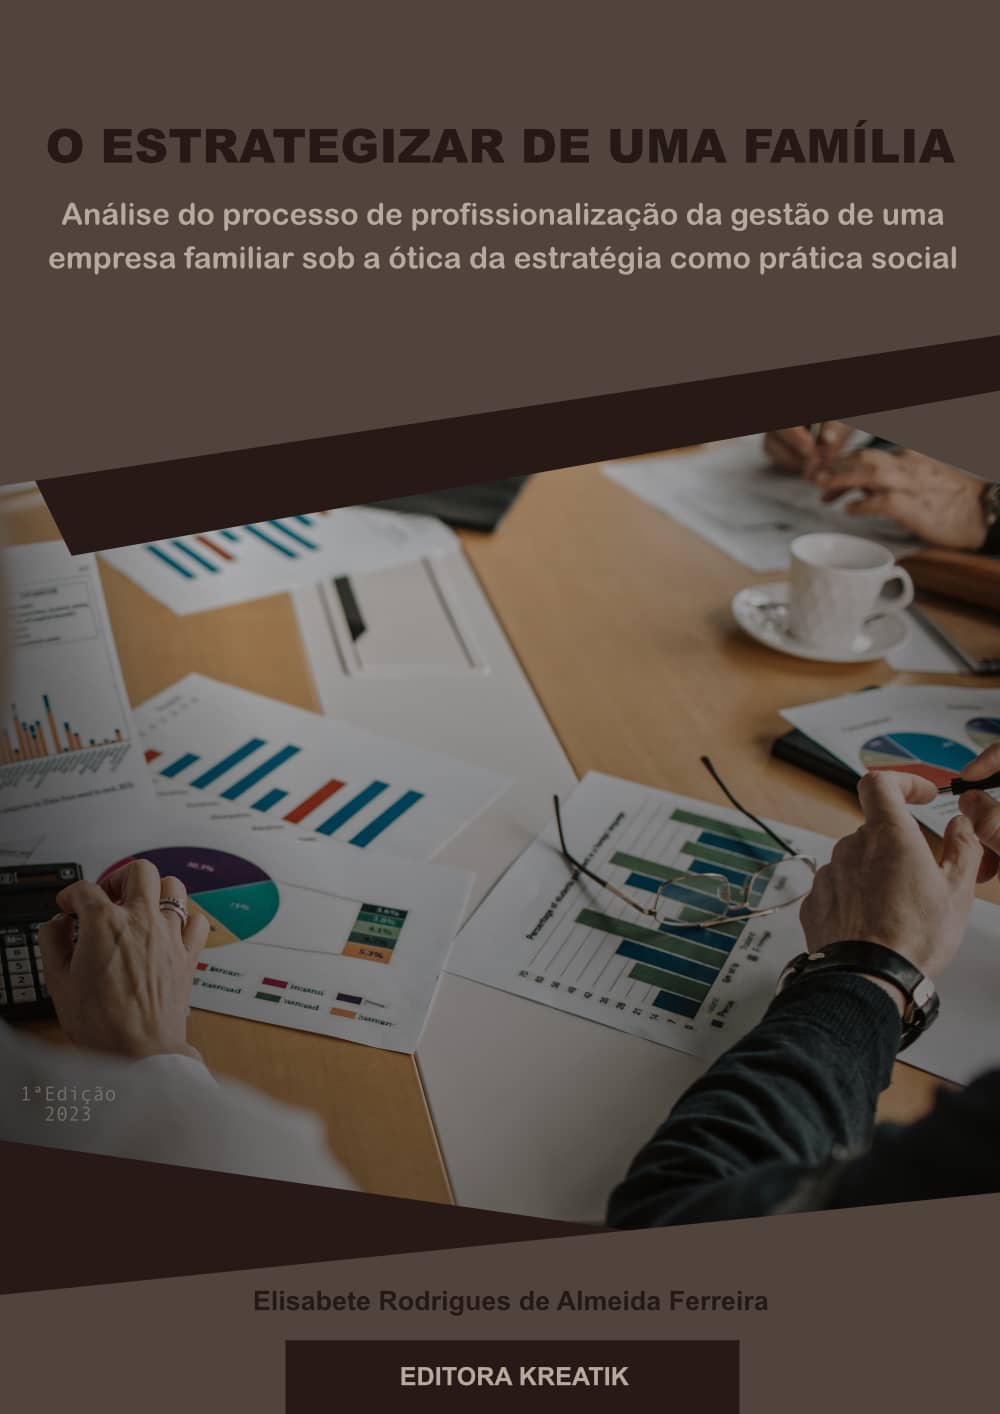 O ESTRATEGIZAR DE UMA FAMÍLIA: análise do processo de profissionalização da gestão de uma empresa familiar sob a ótica da estratégia como prática social